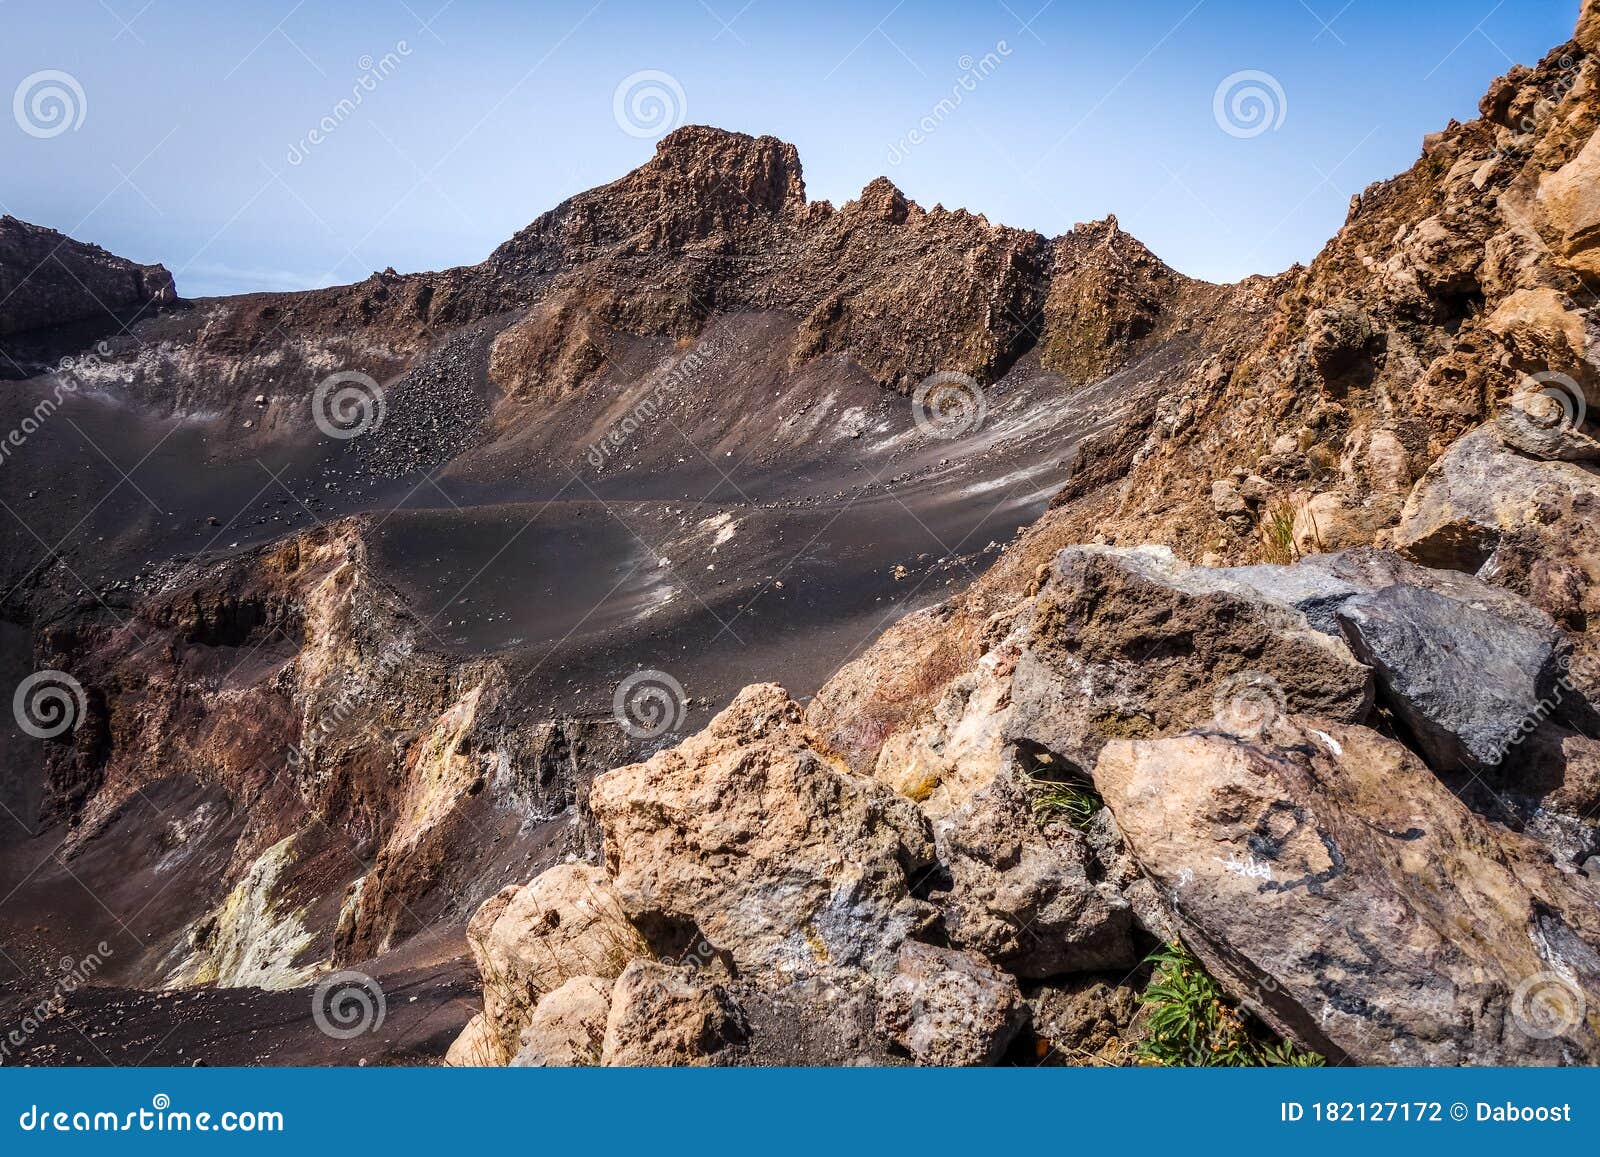 pico do fogo crater, cha das caldeiras, cape verde